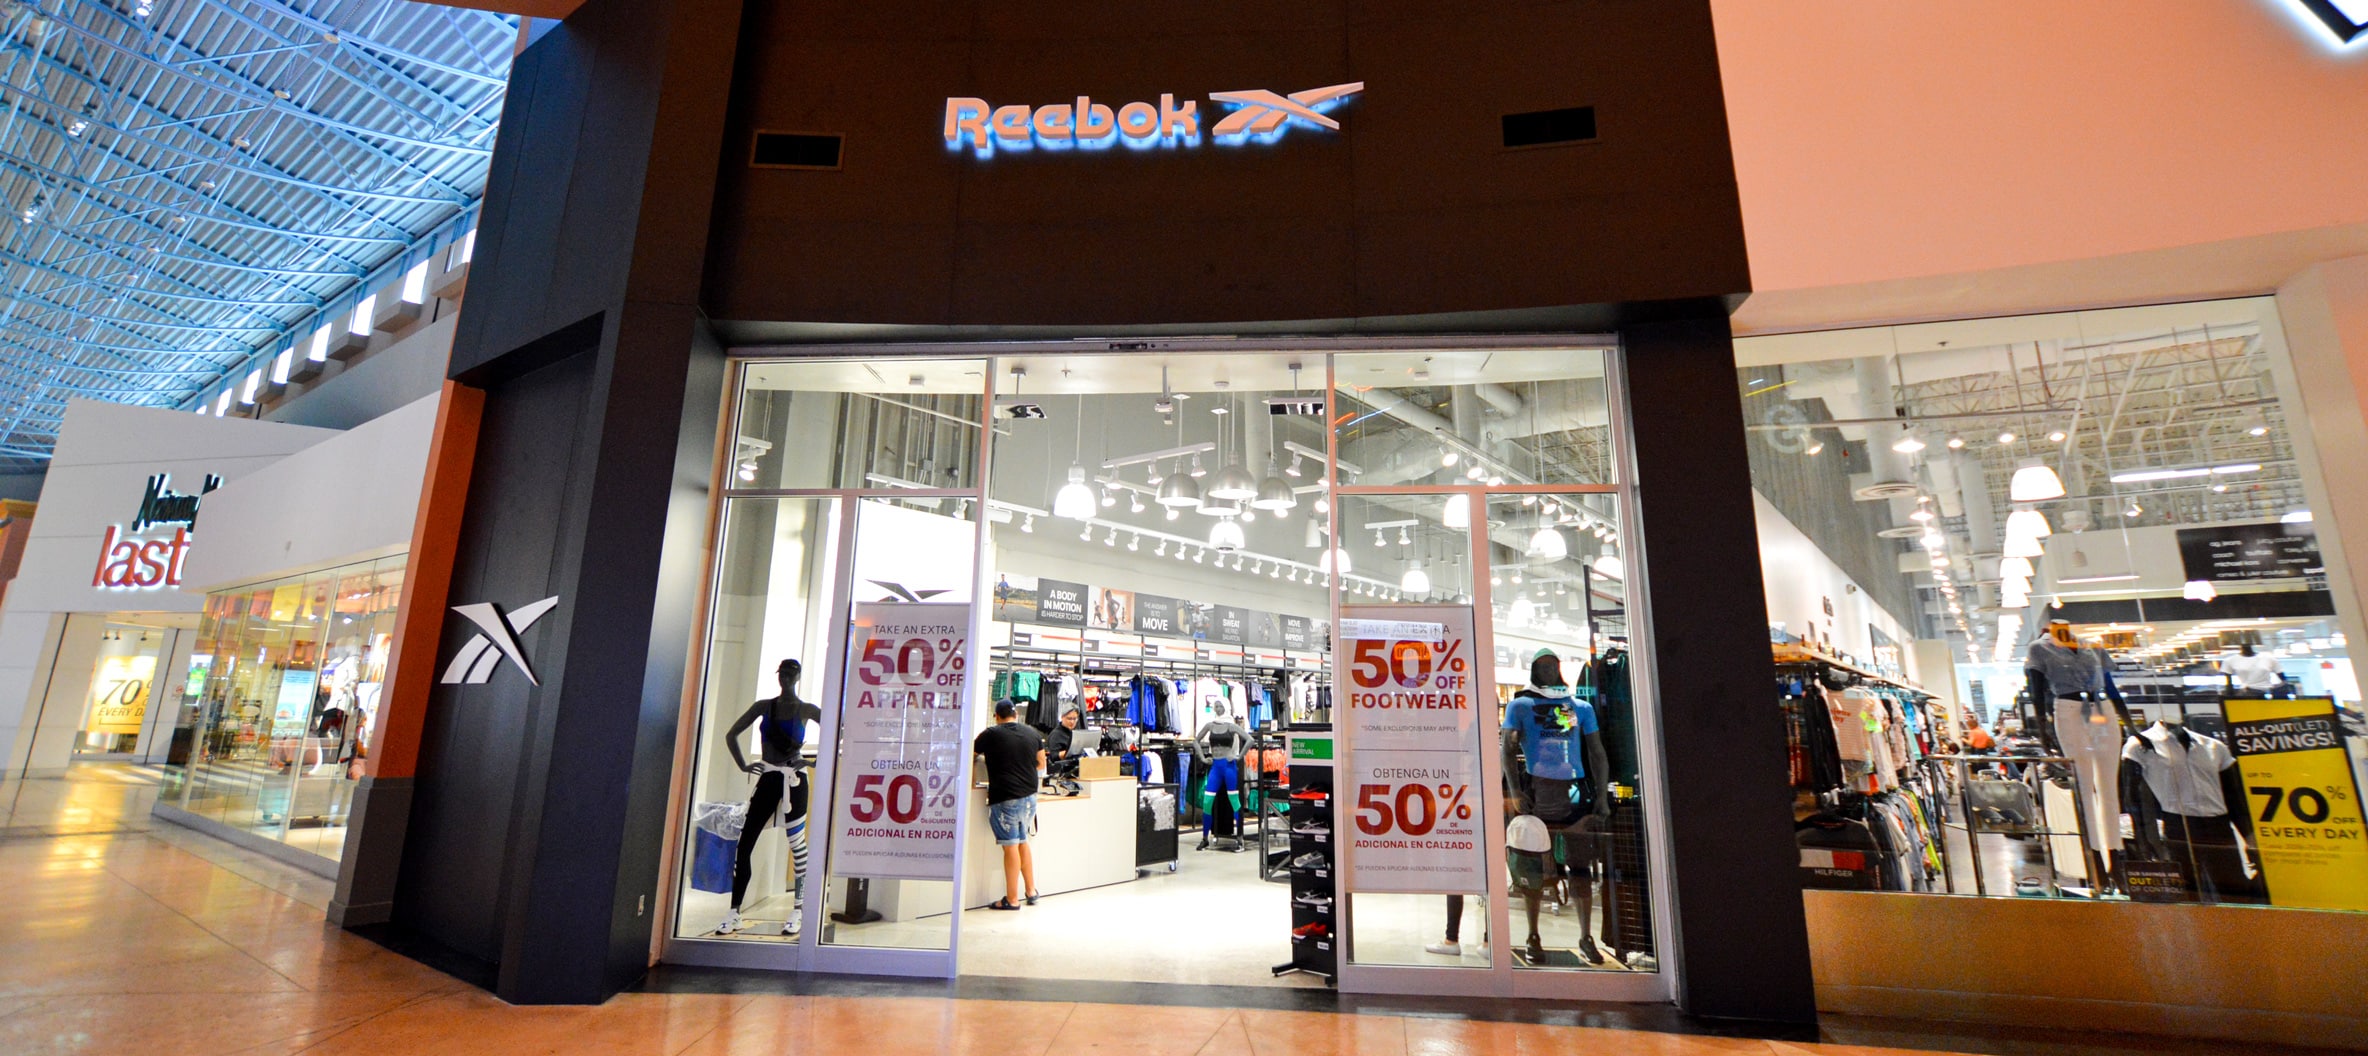 reebok retail store near me